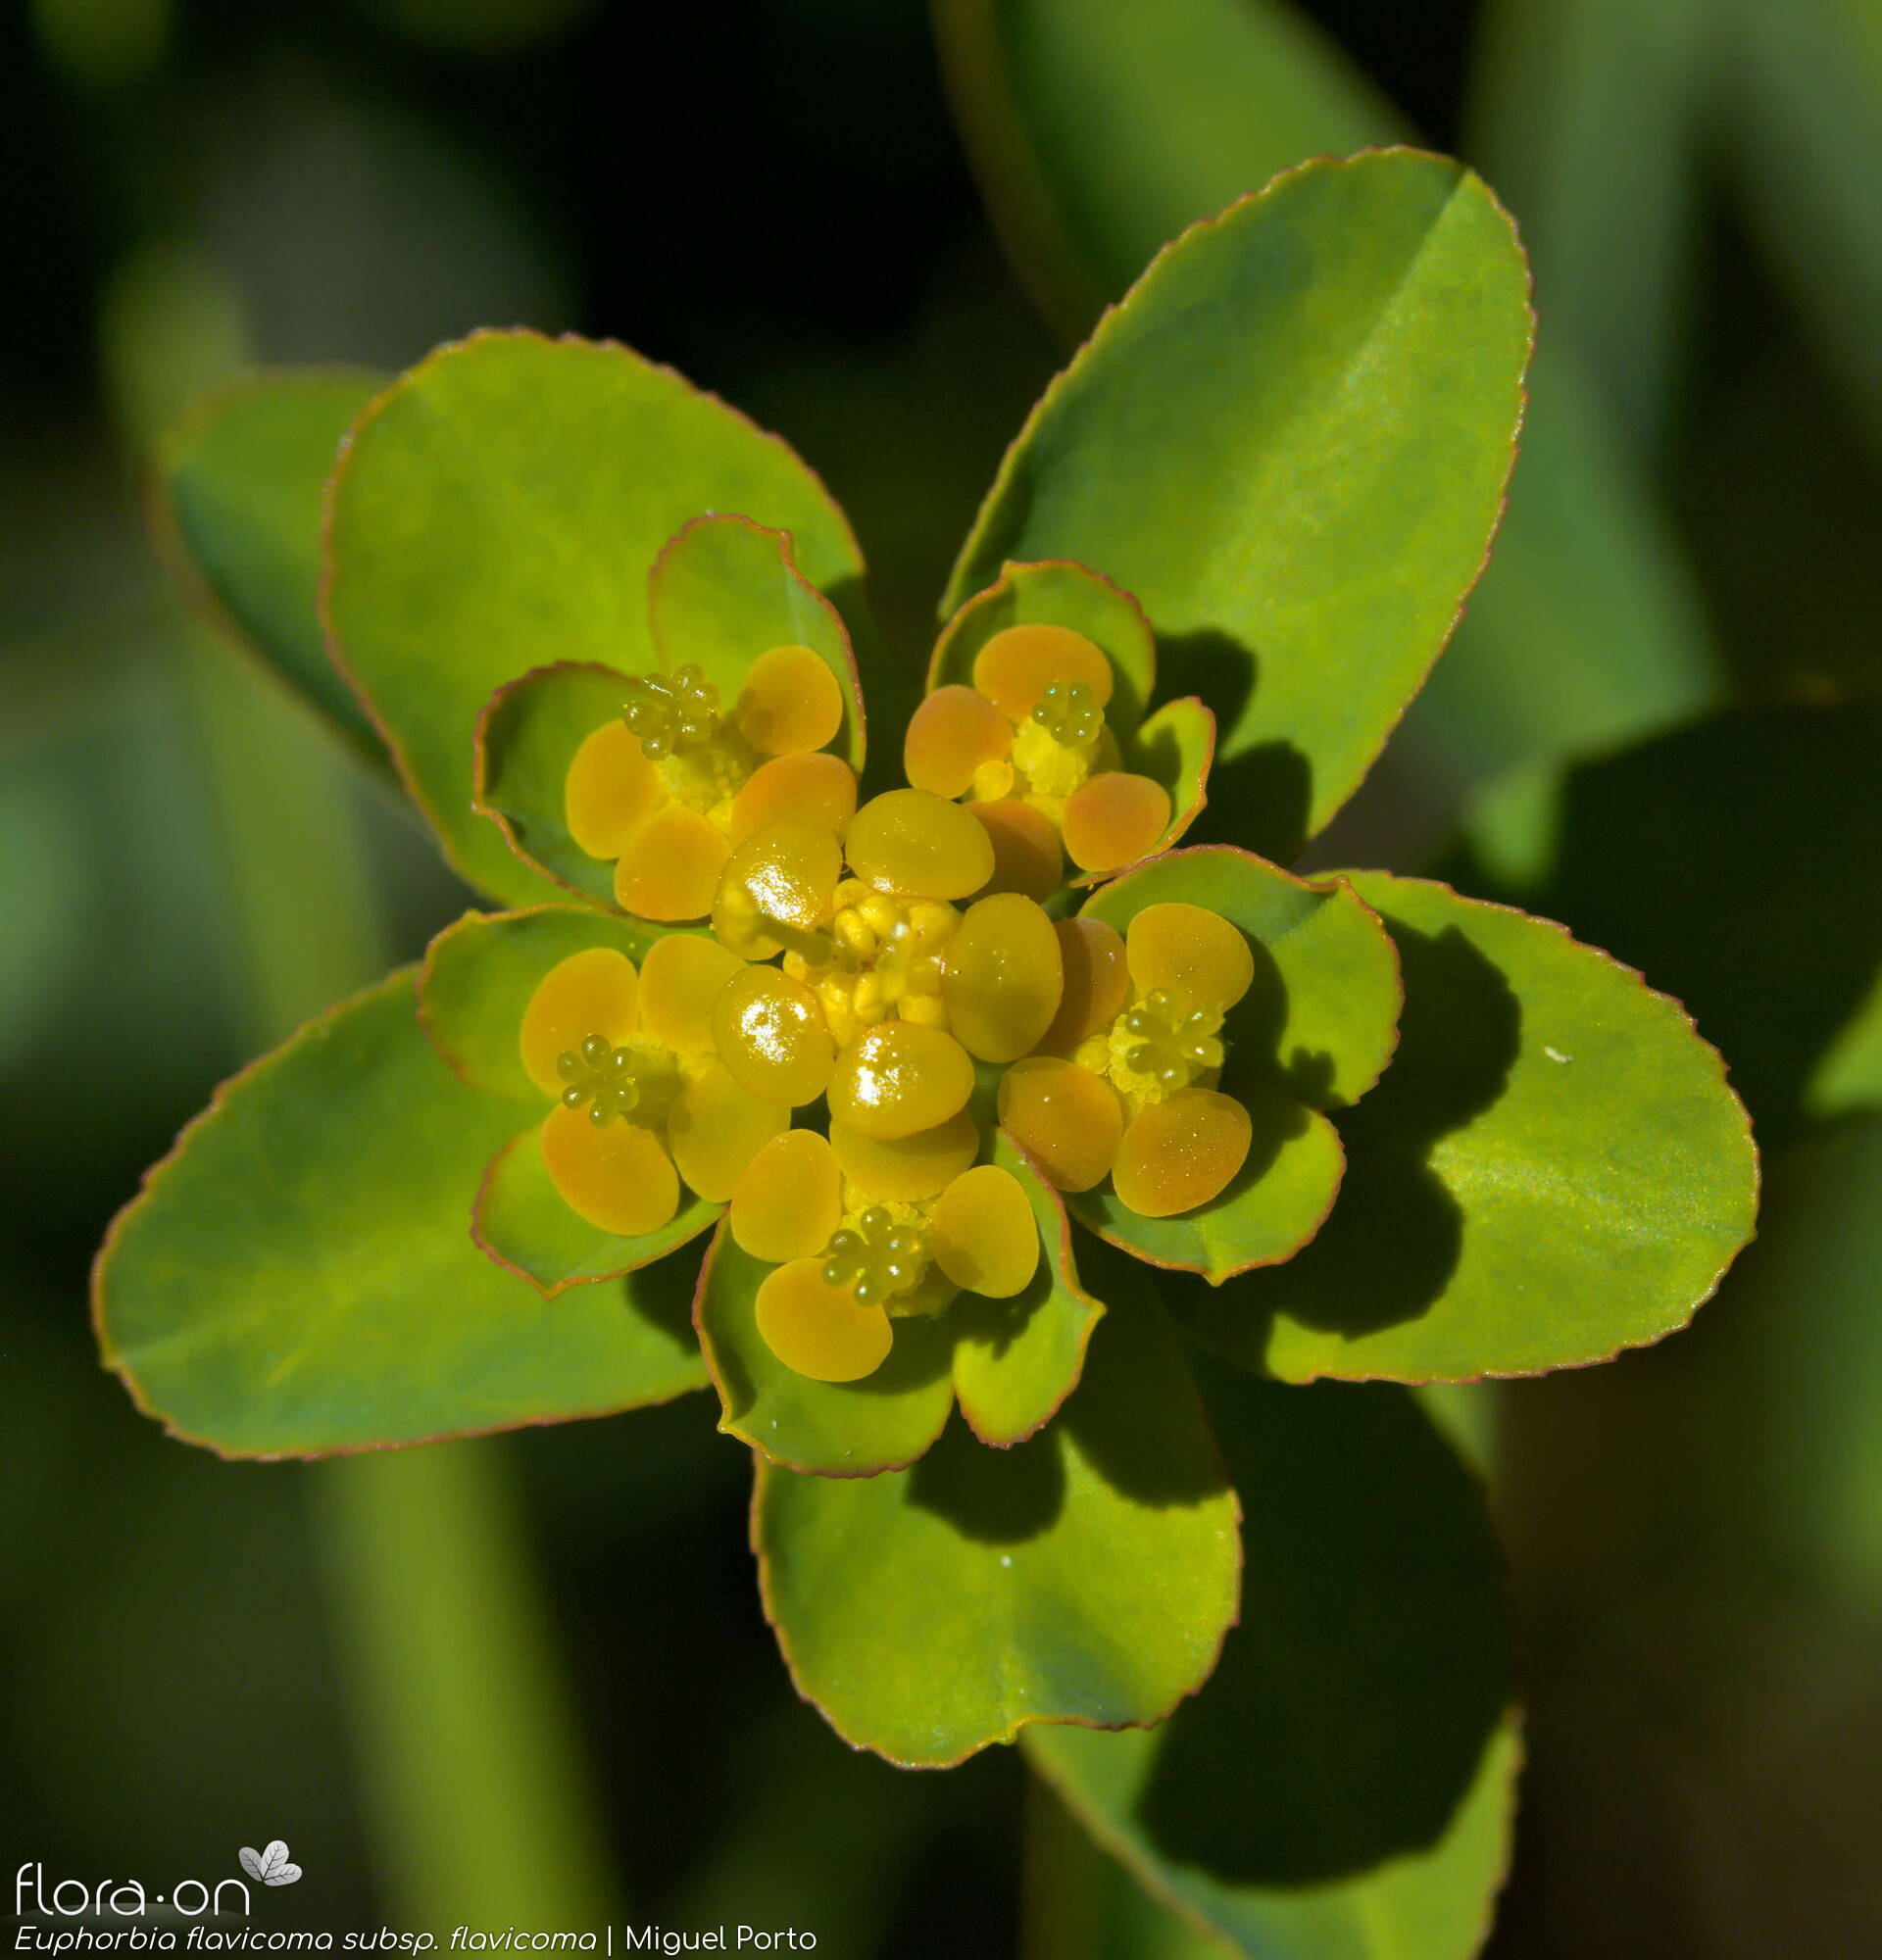 Euphorbia flavicoma flavicoma - Flor (geral) | Miguel Porto; CC BY-NC 4.0